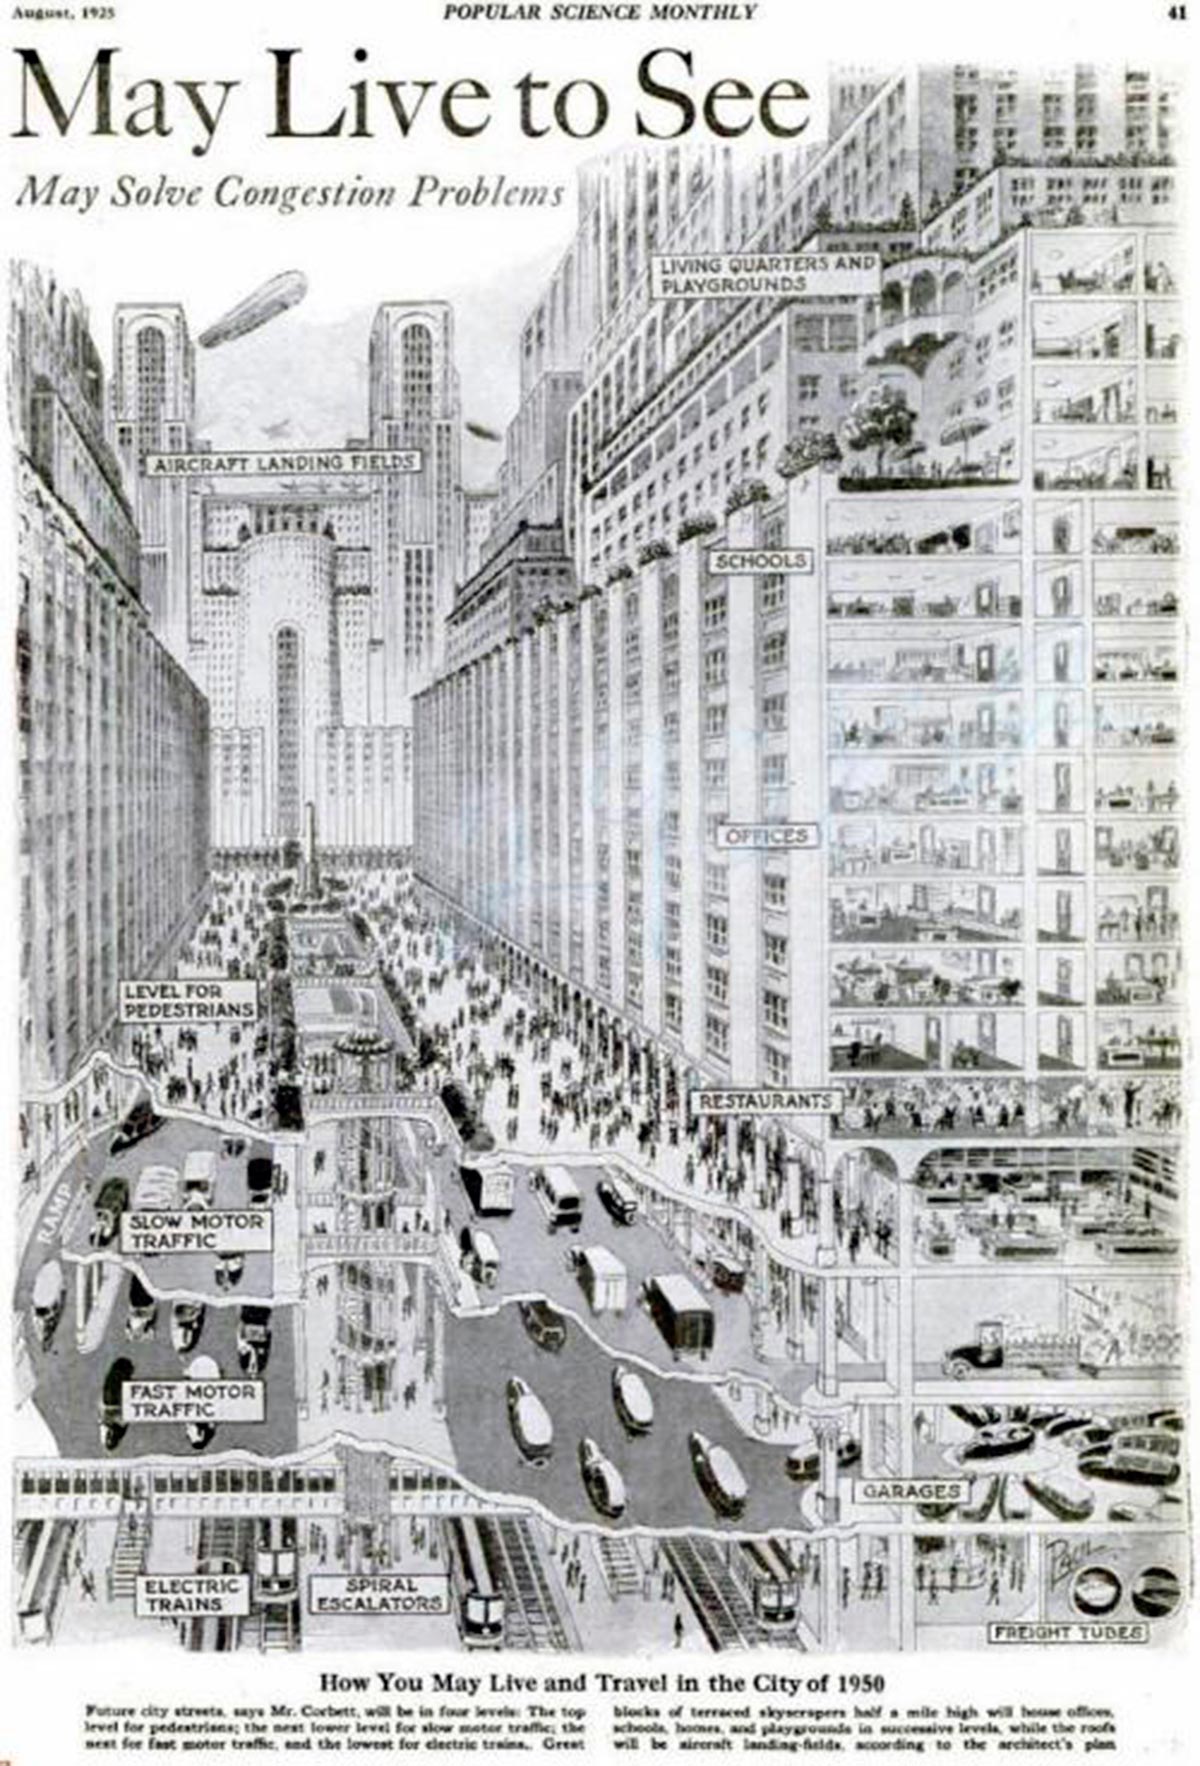 La percepción psicológica de la ciudad. “Future city”, Corbett (Popular Science, 1925). (www.worldidentitylab.net)